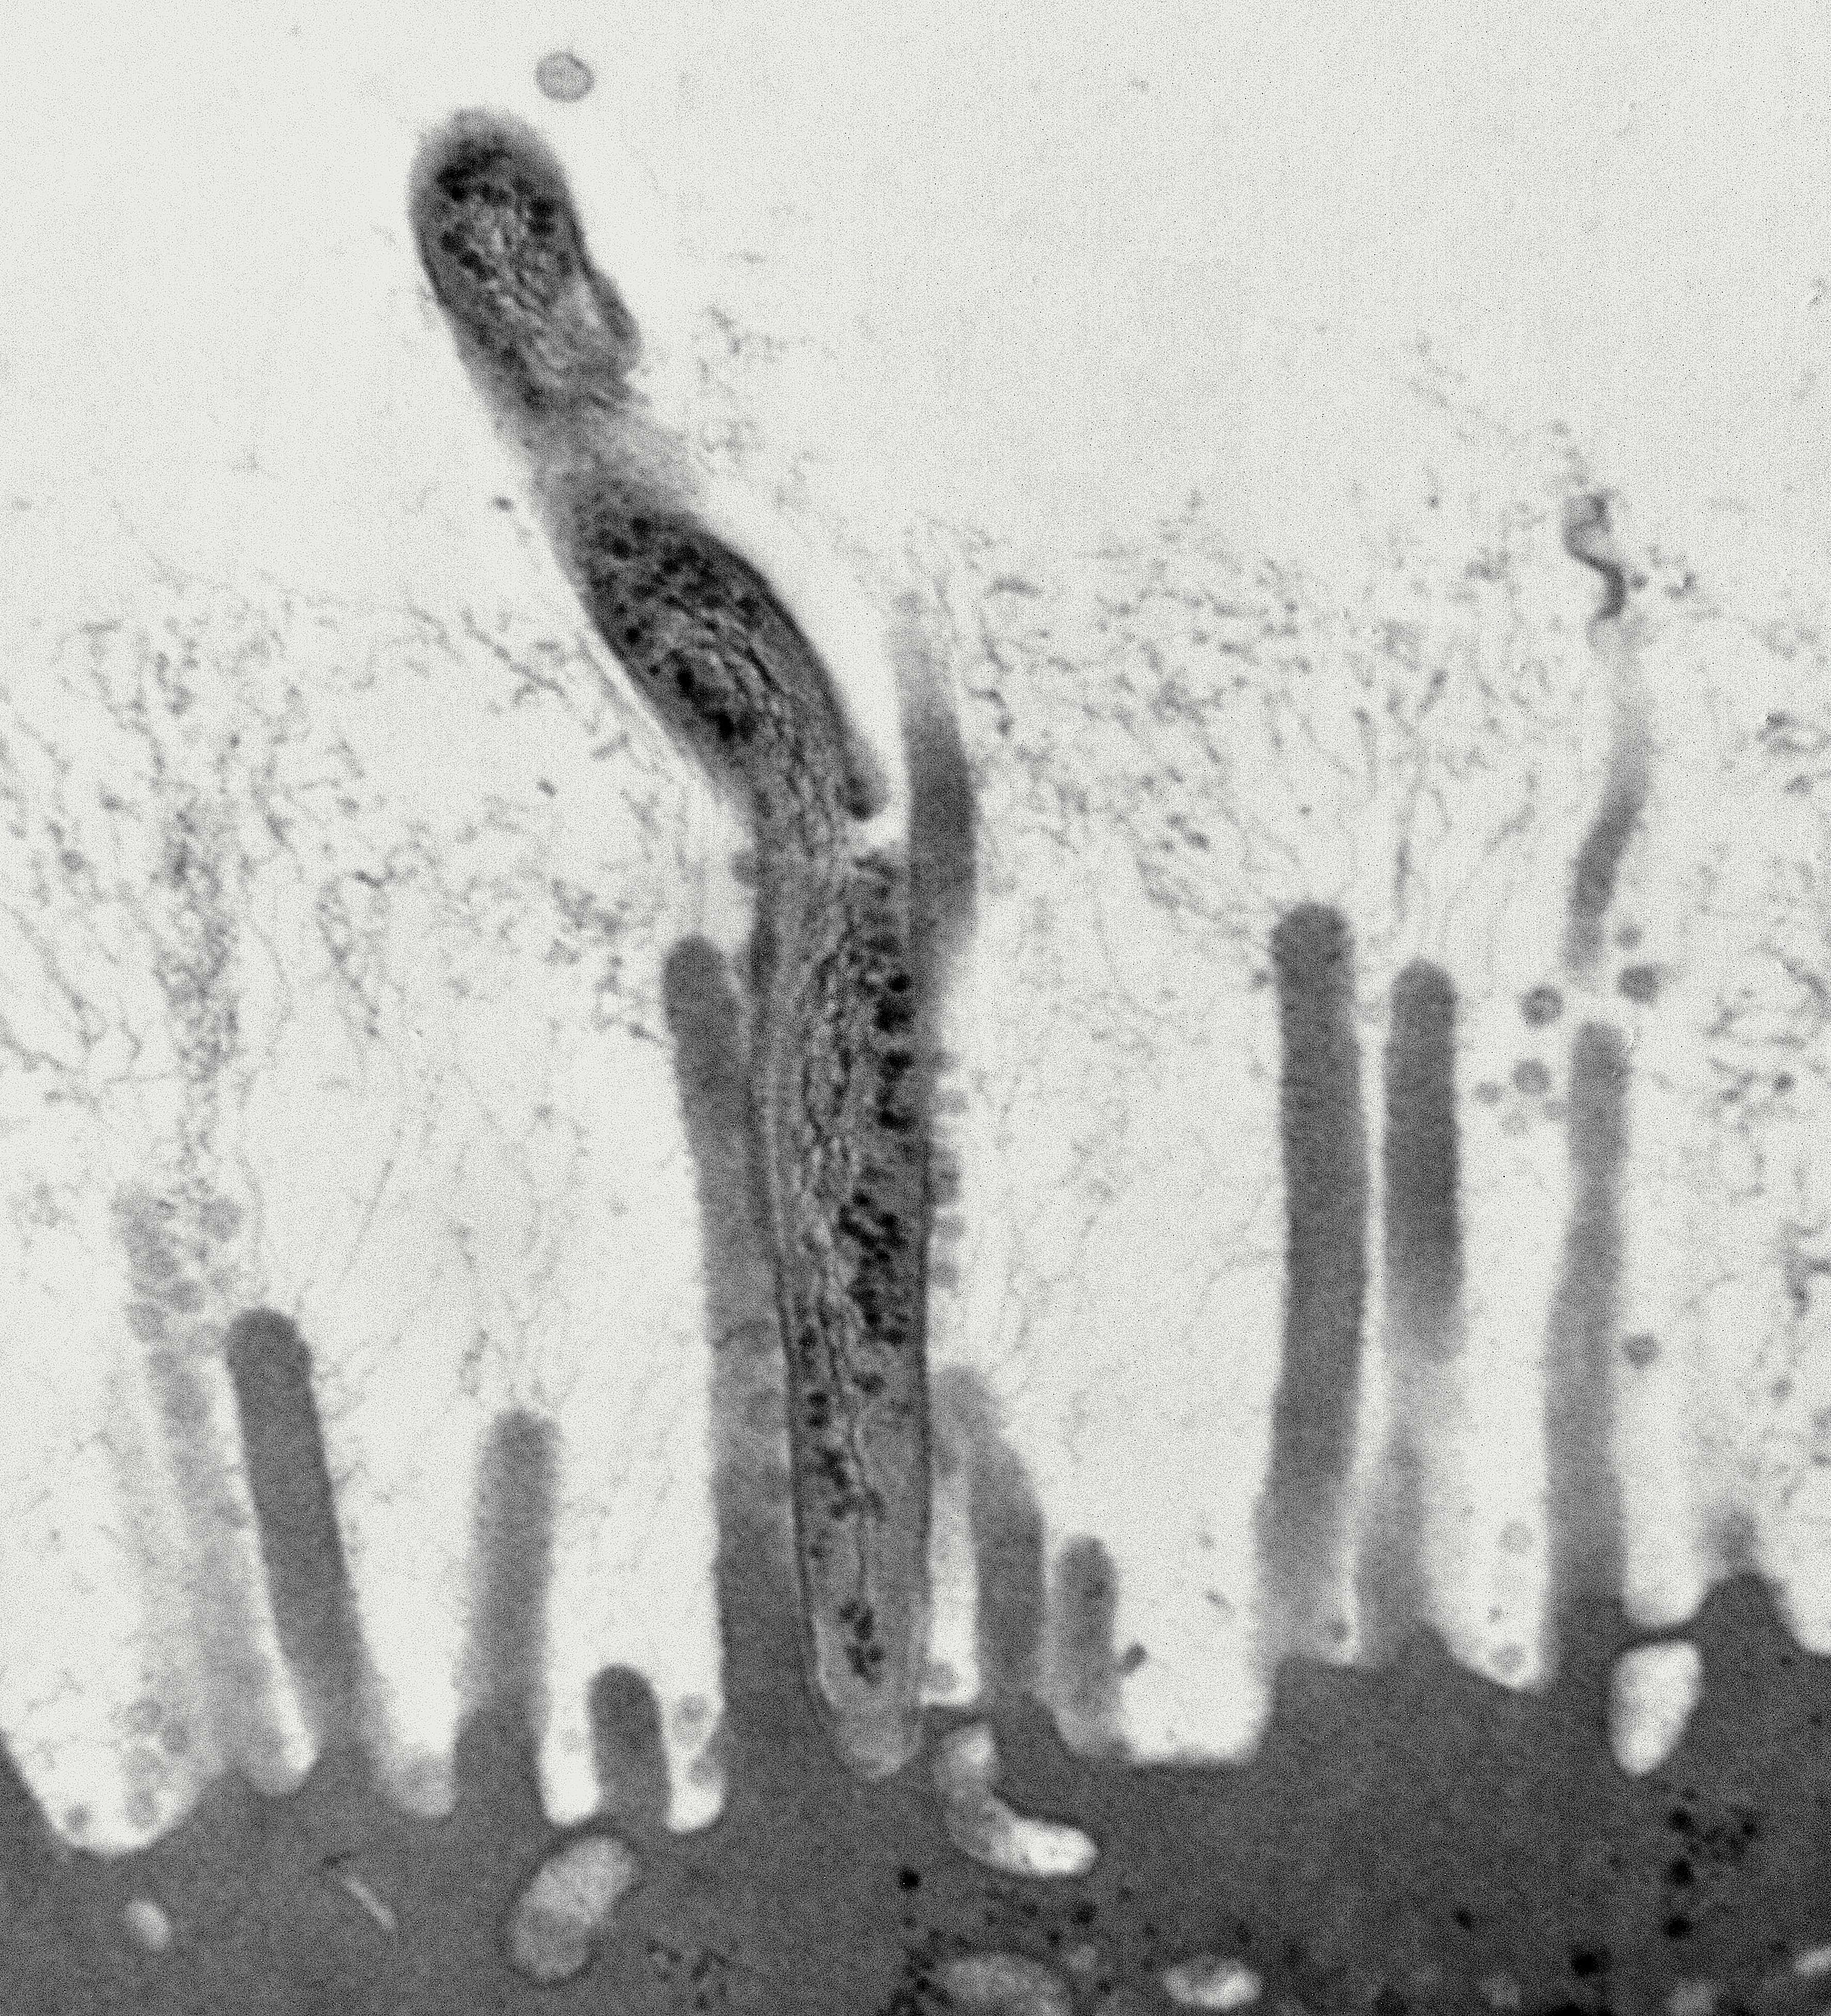 elektronmikroskopibild av bakterie som interagerar med tarmvilli